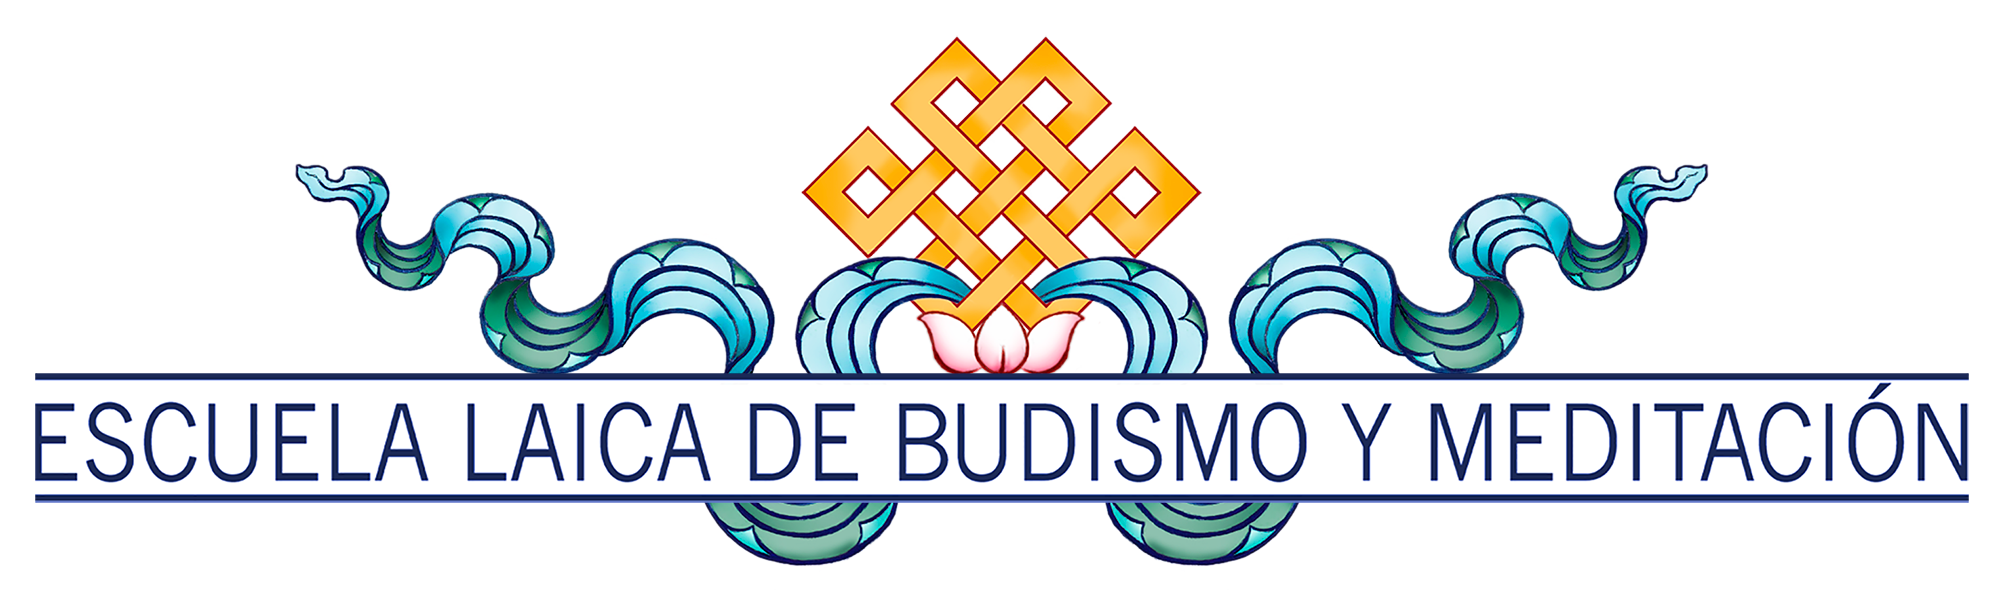 Escuela Laica de Budismo y Meditación